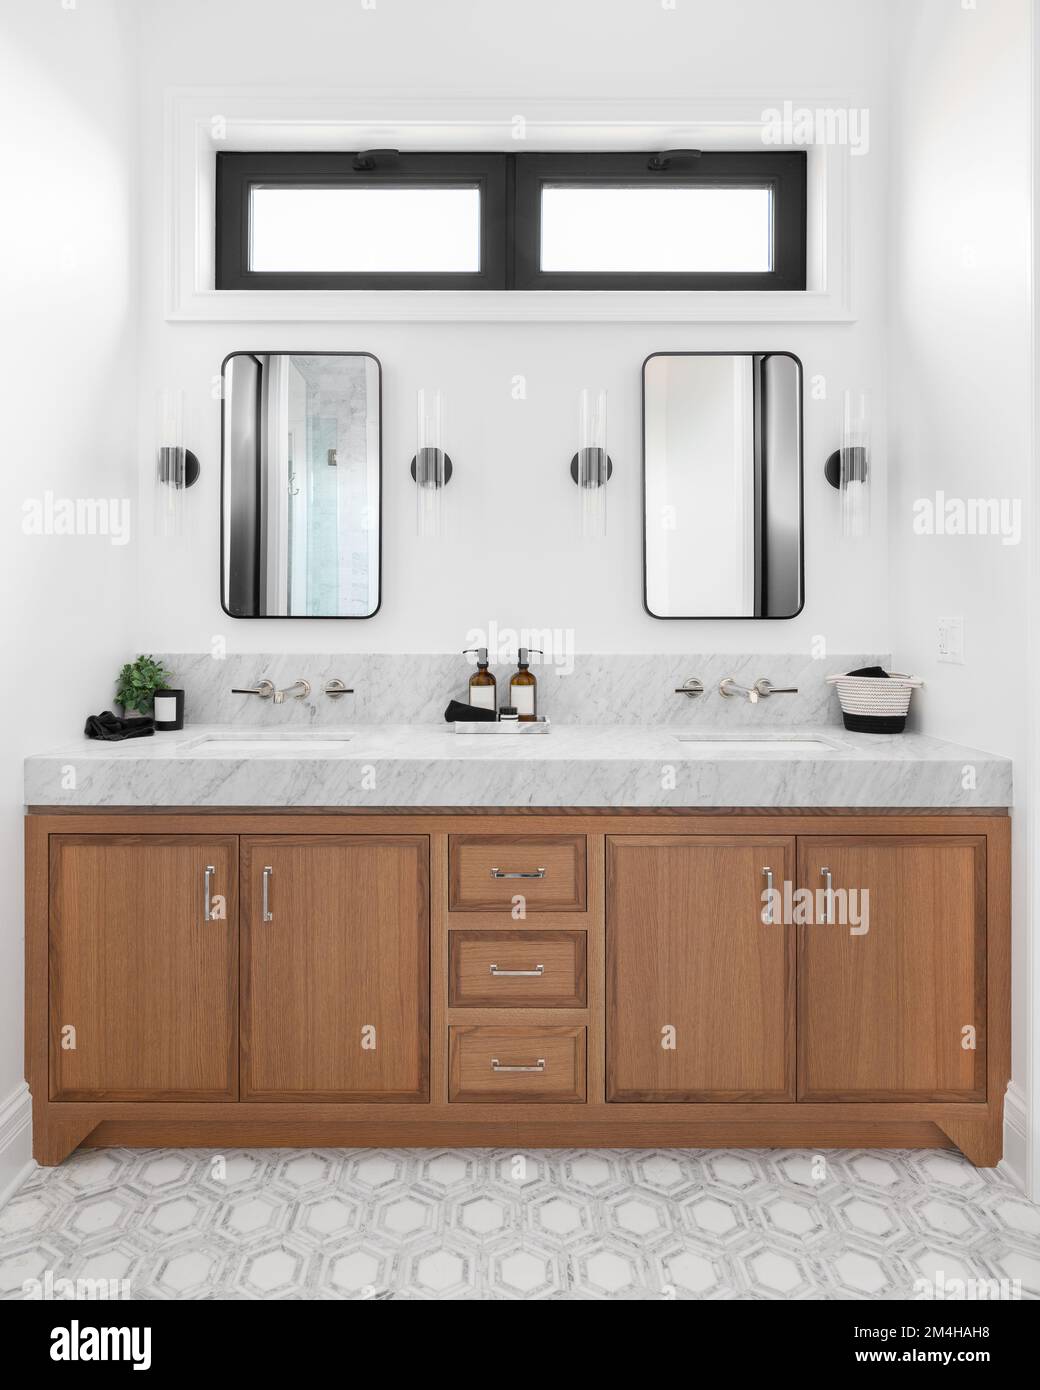 Une salle de bains confortable avec un meuble en bois, un comptoir en marbre, des sconces autour de miroirs carrés et un beau sol carrelé. Banque D'Images